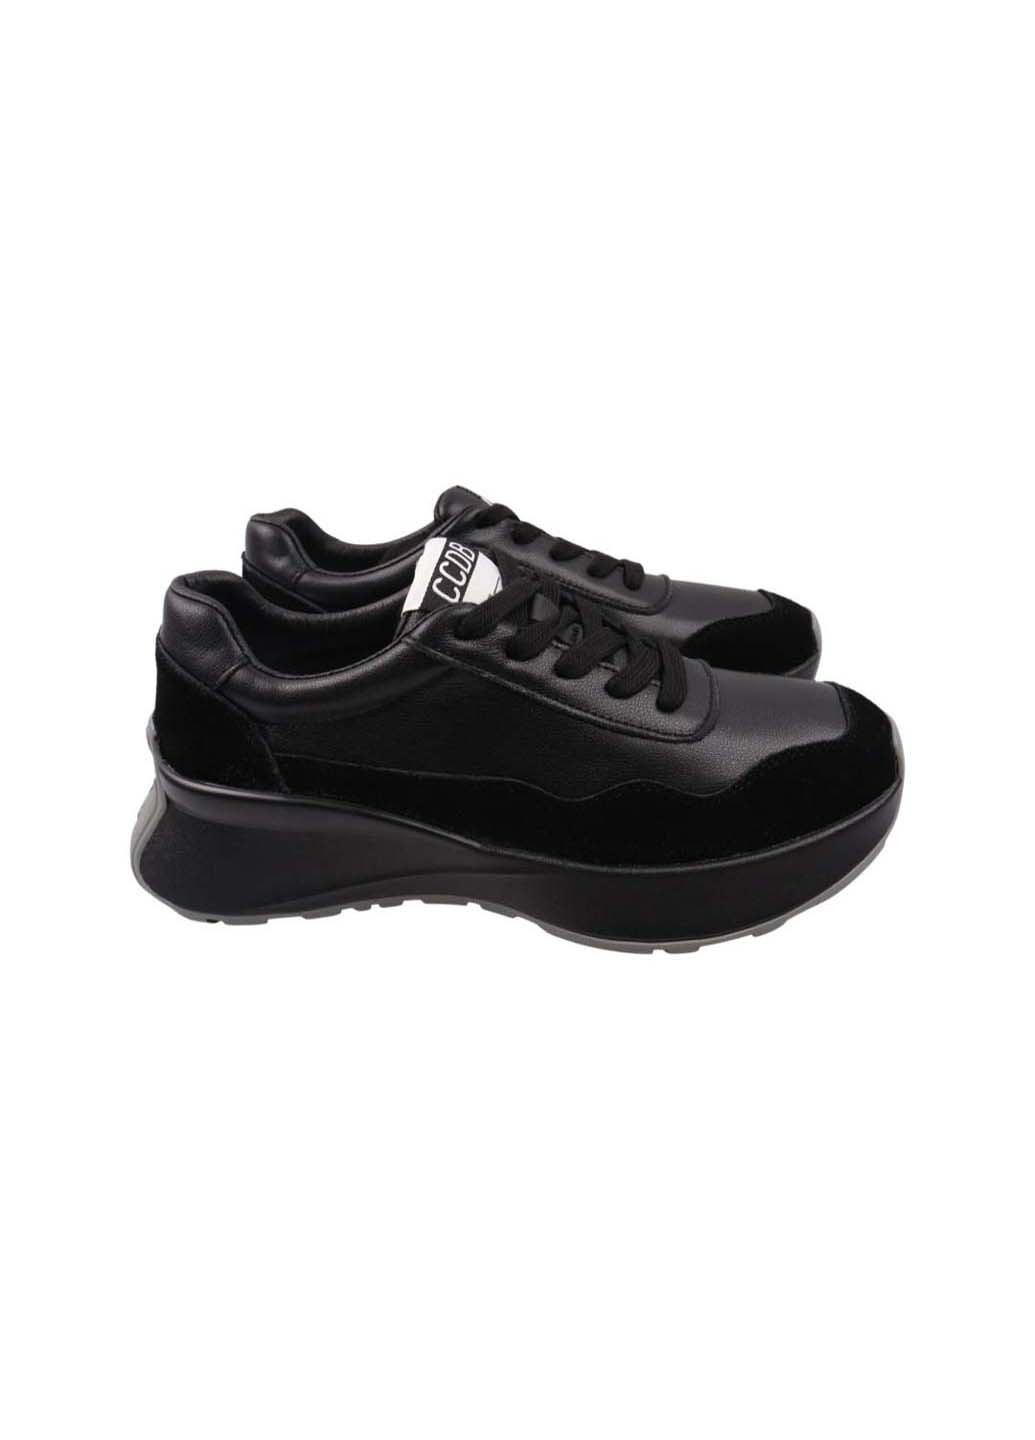 Черные демисезонные кроссовки Lifexpert 1076-22DK